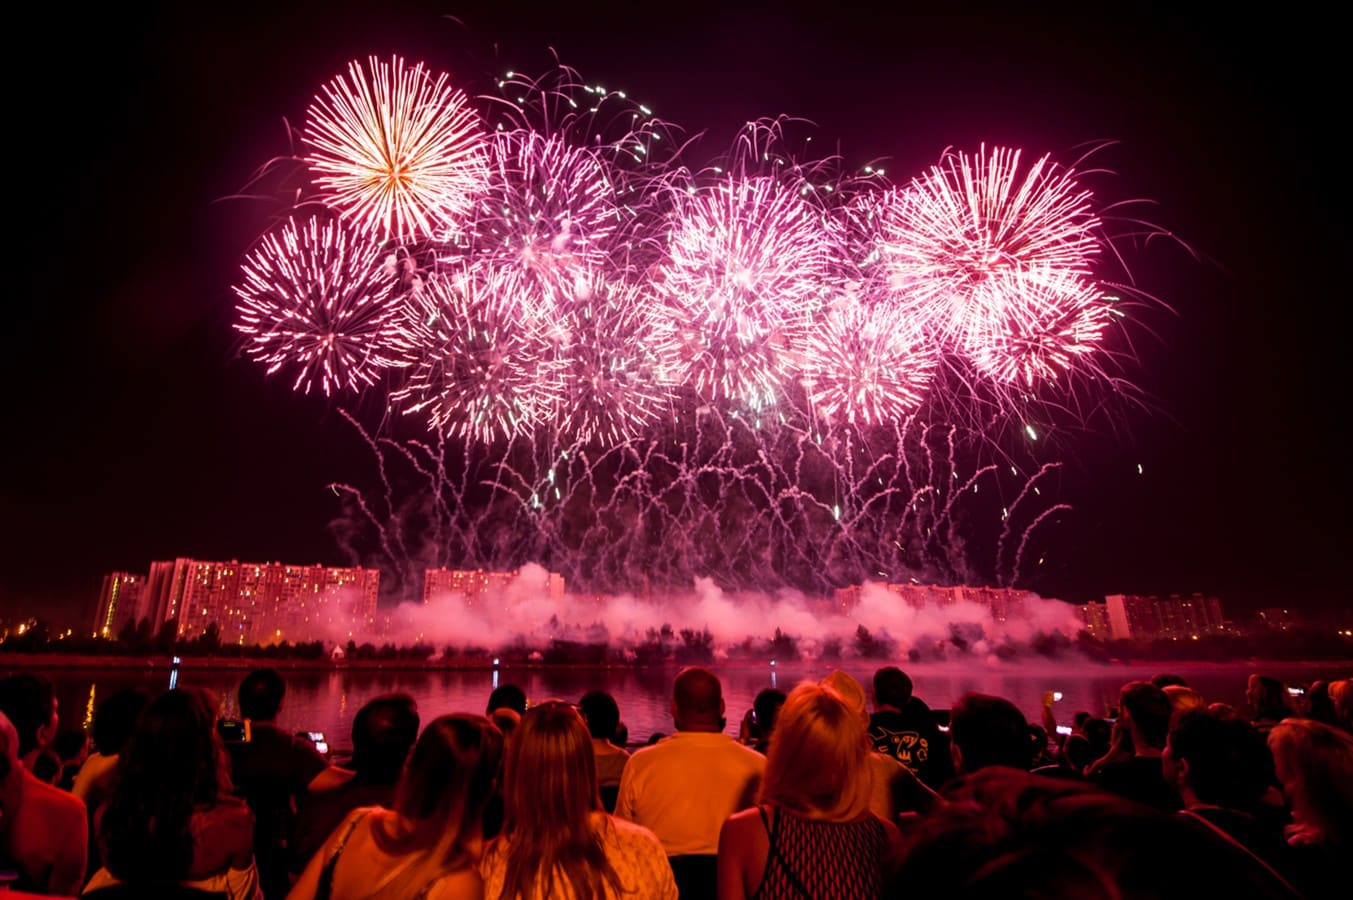 Фестиваль фейерверков Ростех: дата, когда будет в 2019 году, программа и стоимость билетов